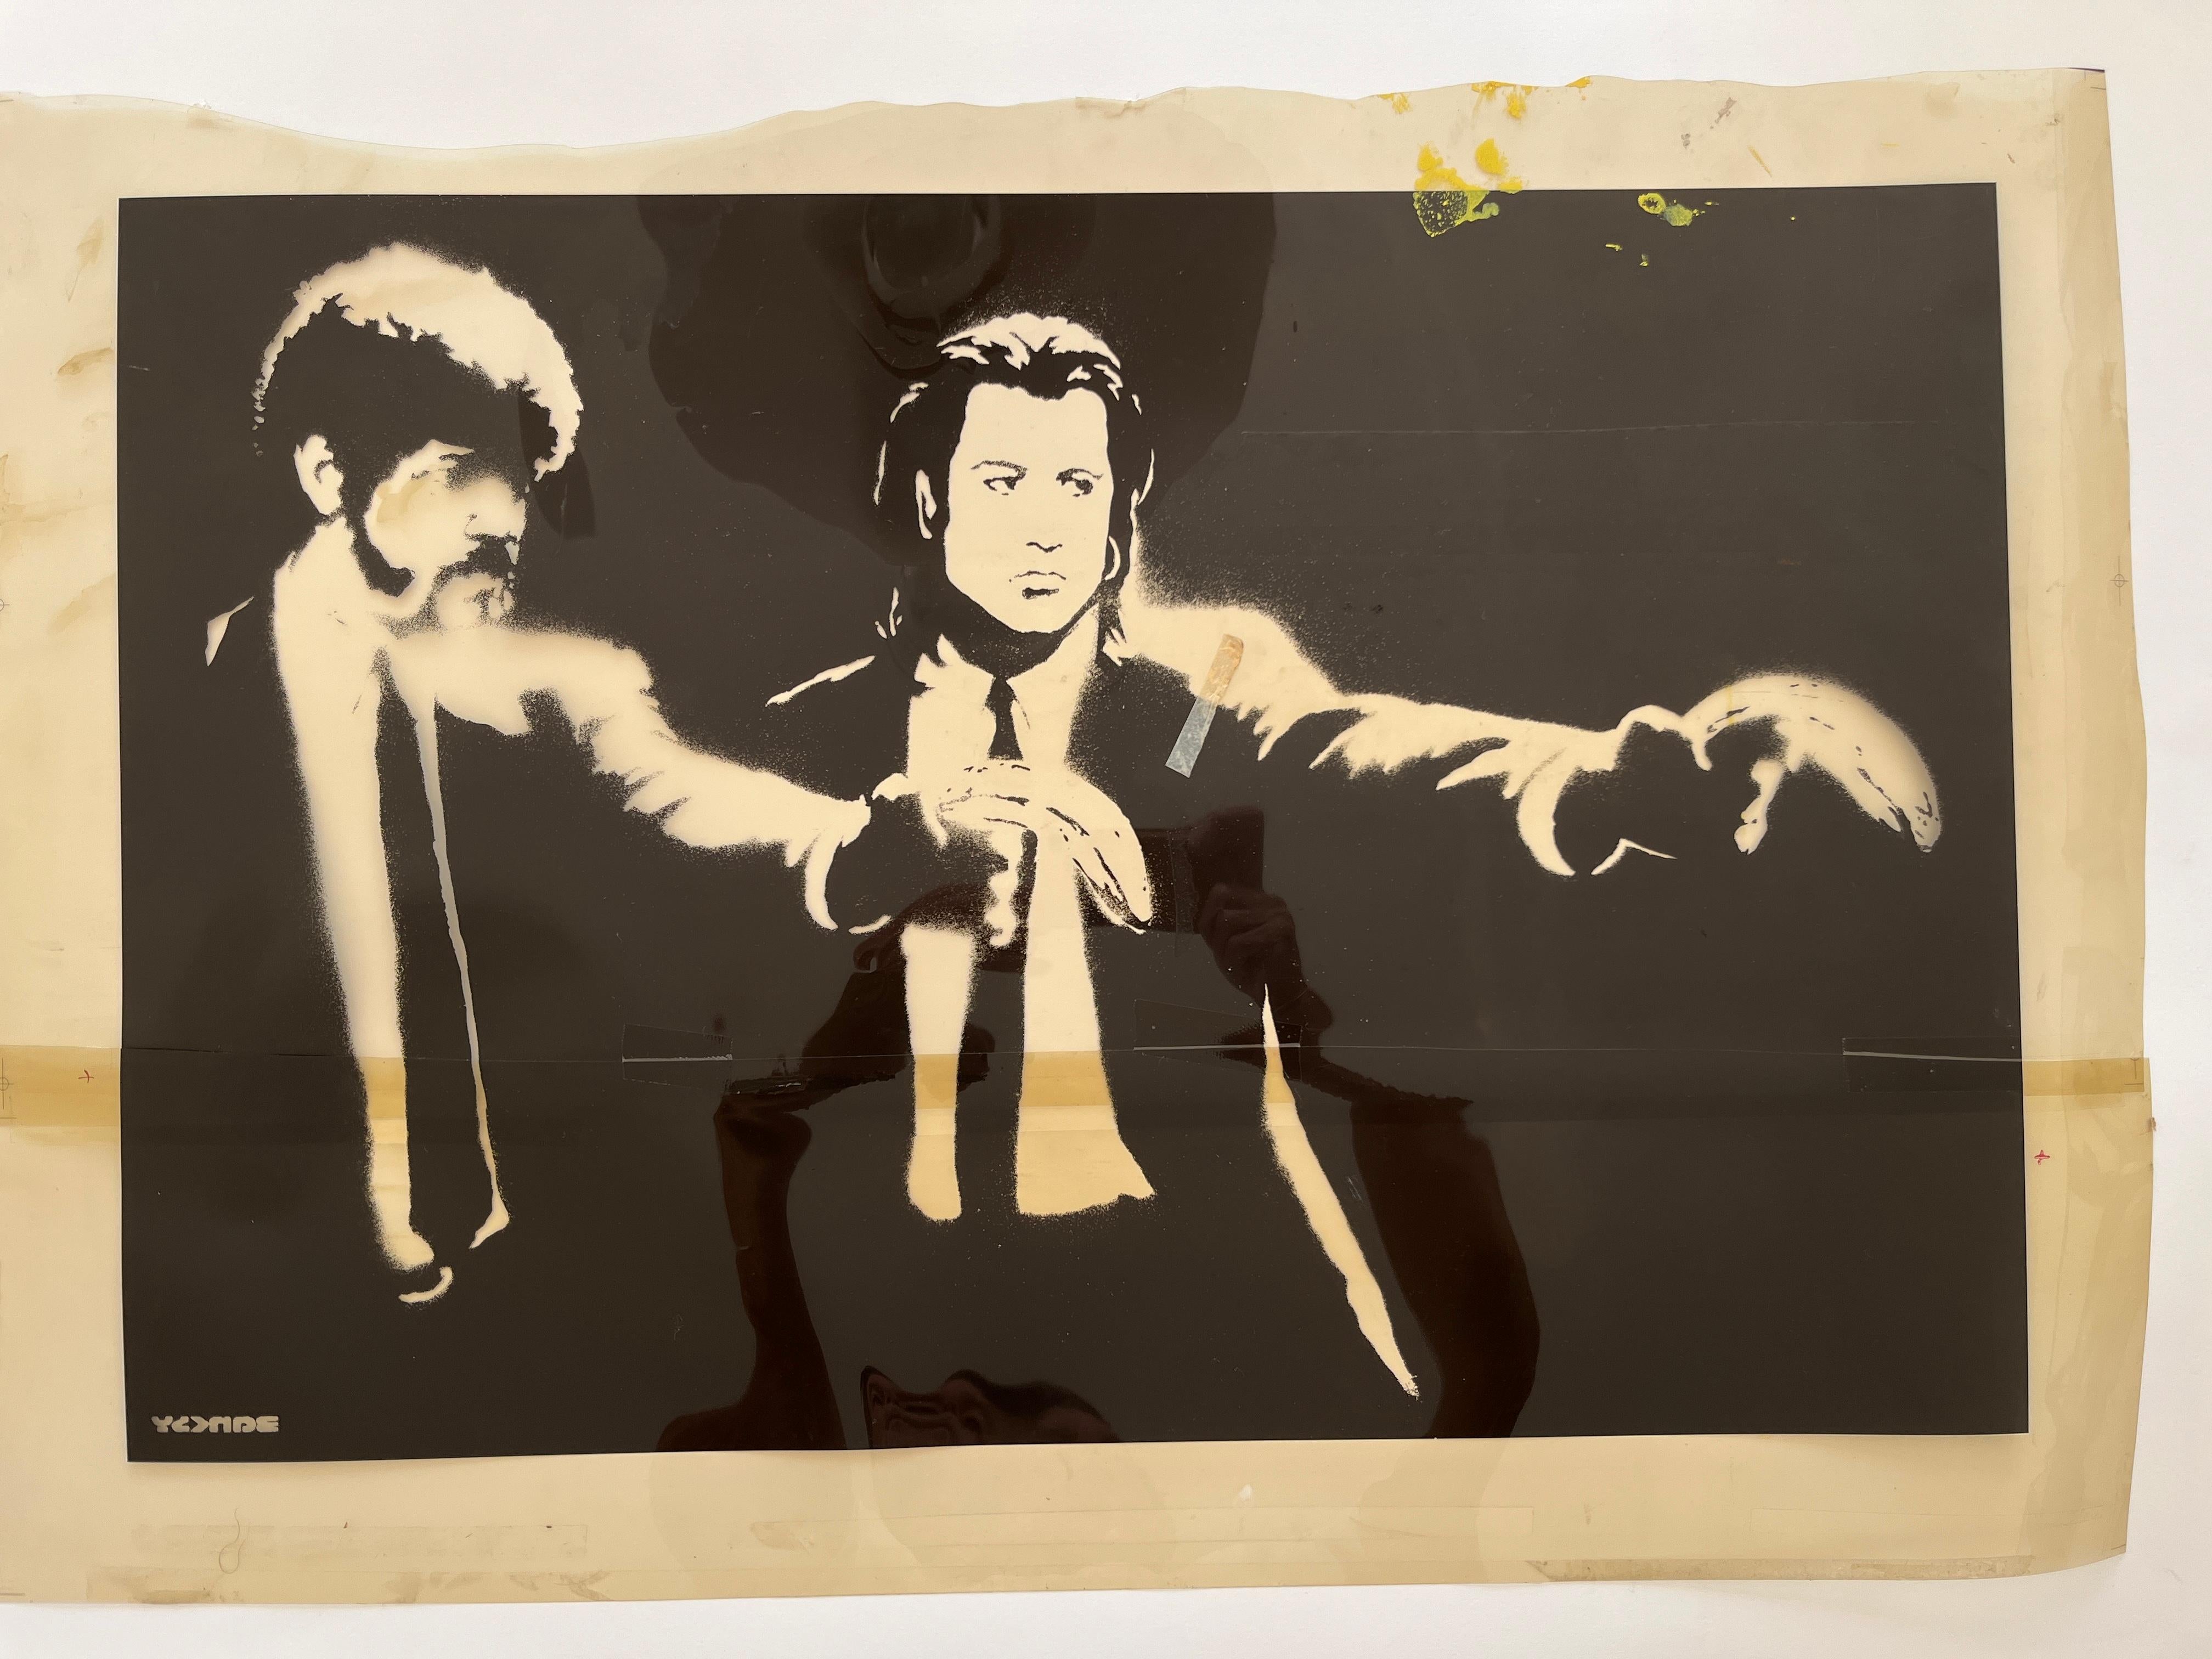 Banksy Figurative Print - "Pulp Fiction" original and unique screen print exposures.